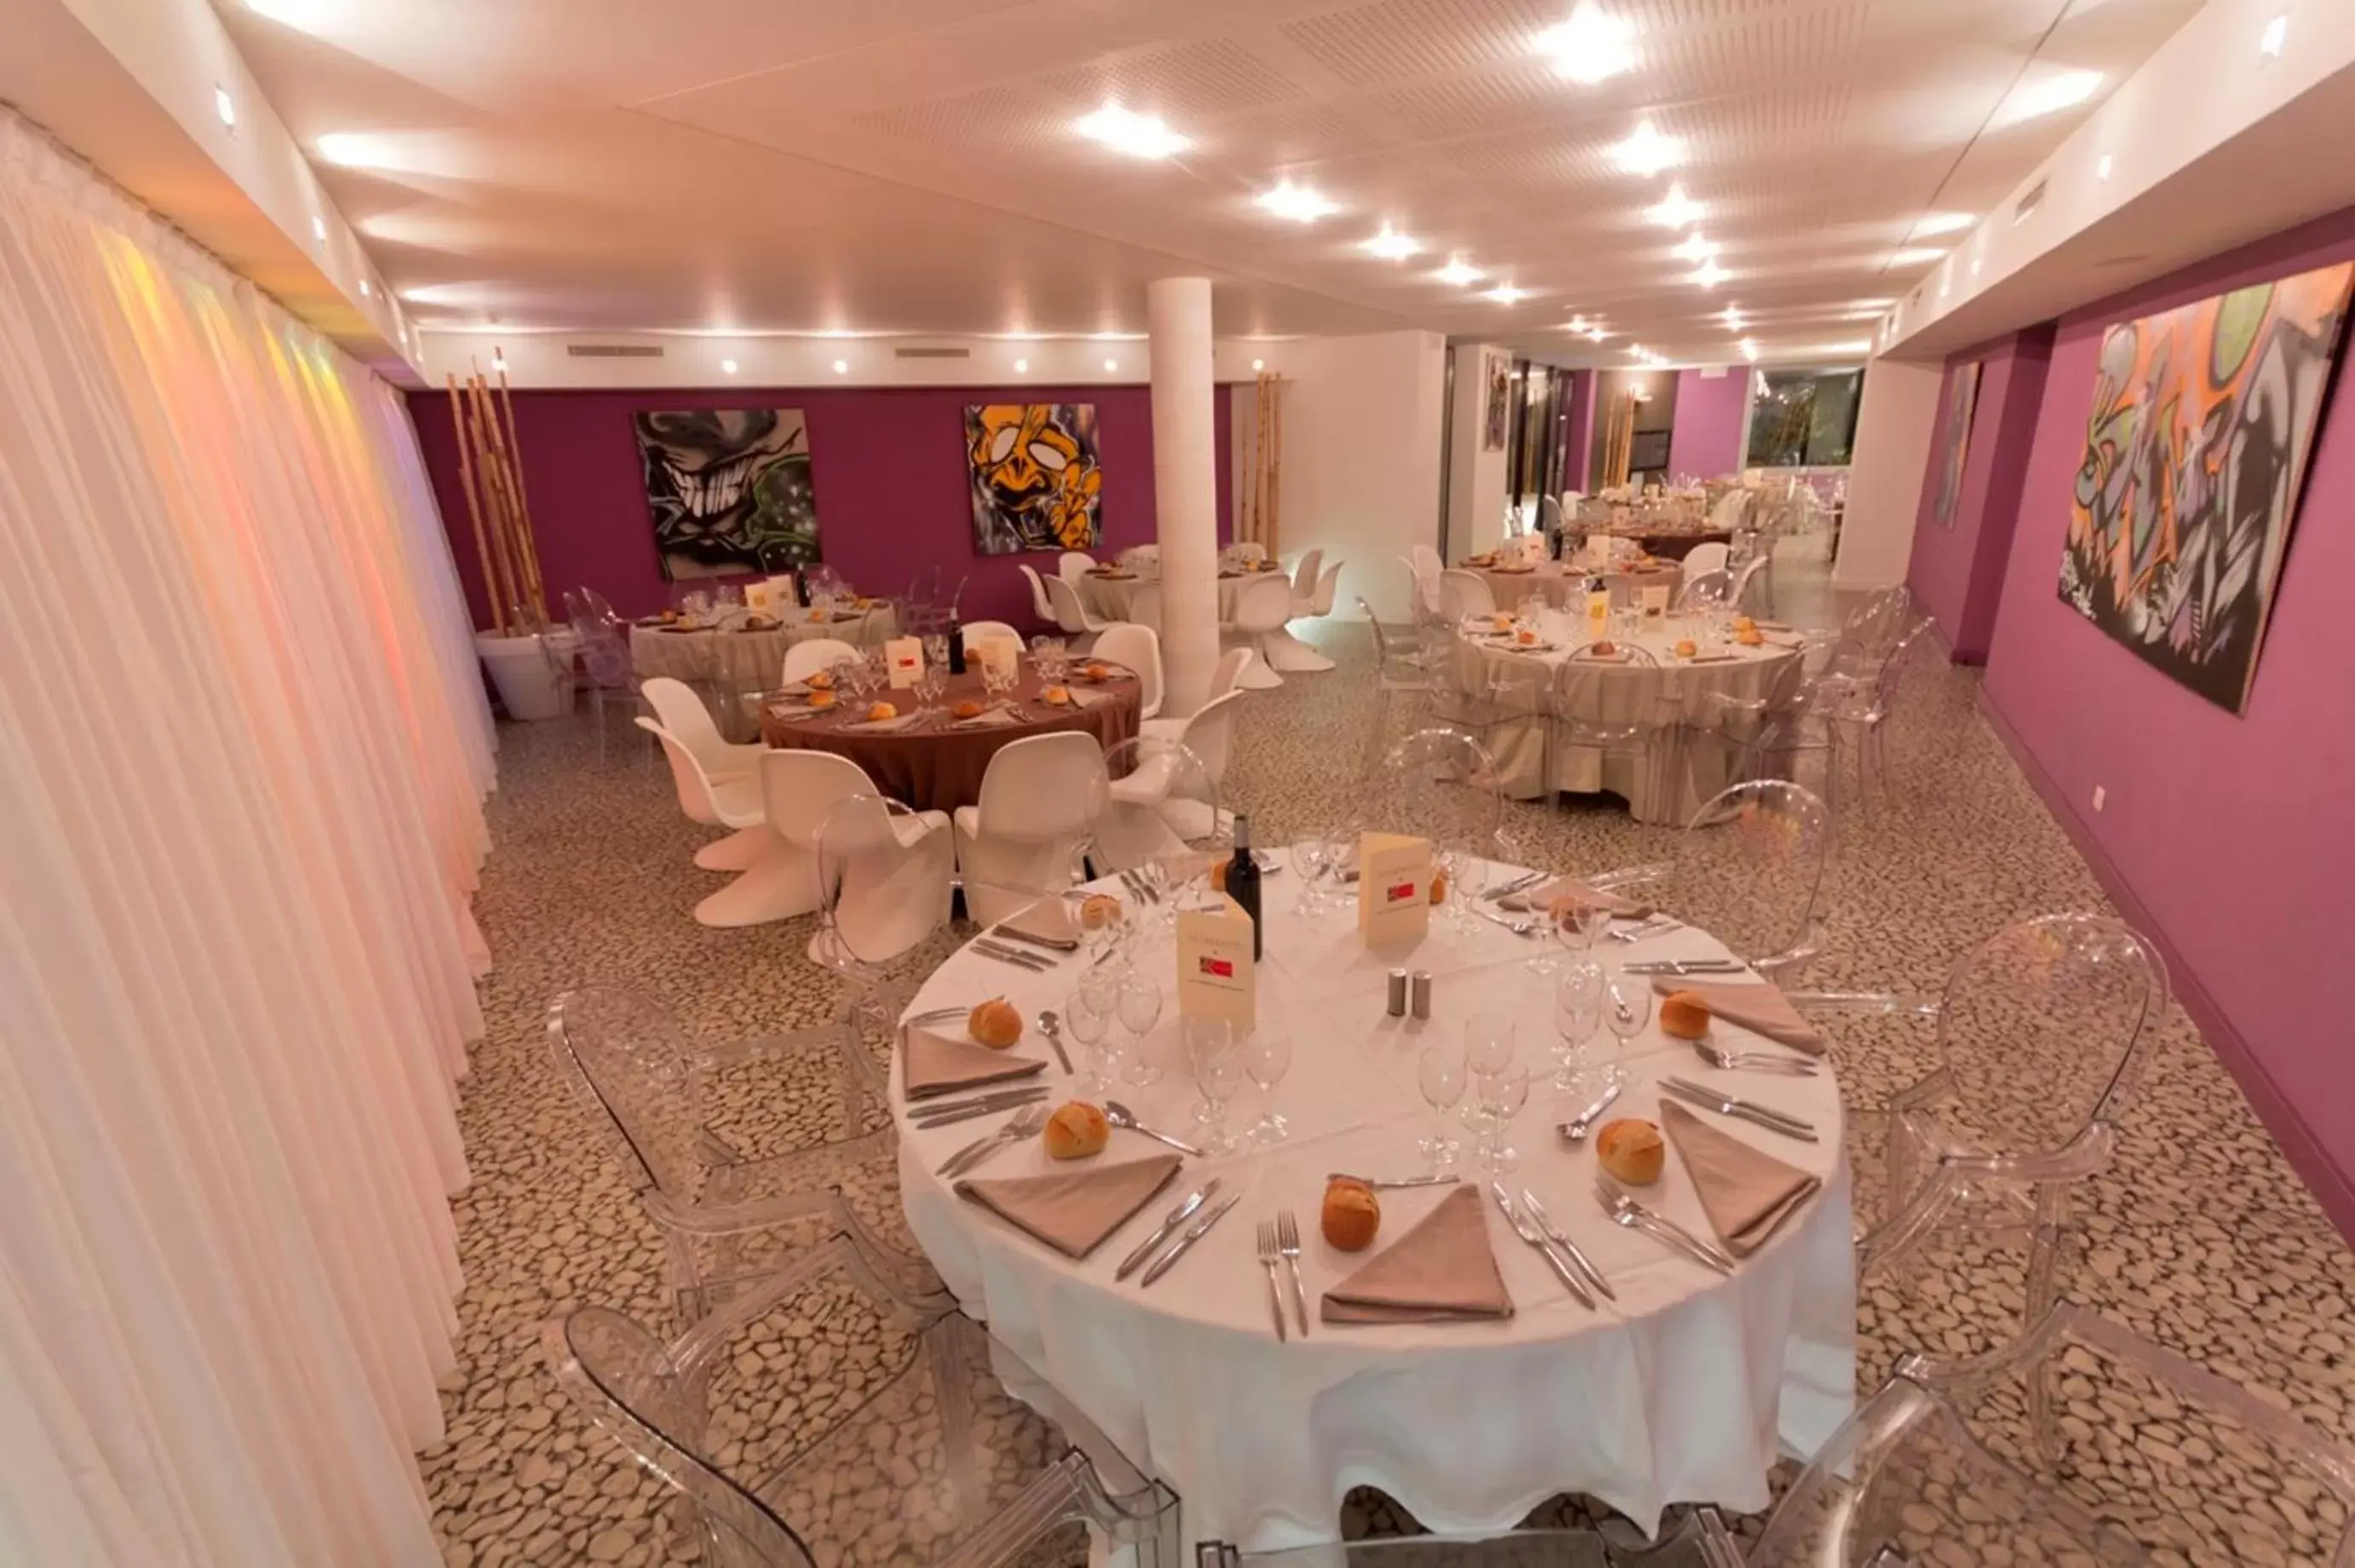 Restaurant/places to eat, Banquet Facilities in Le Rex Hôtel